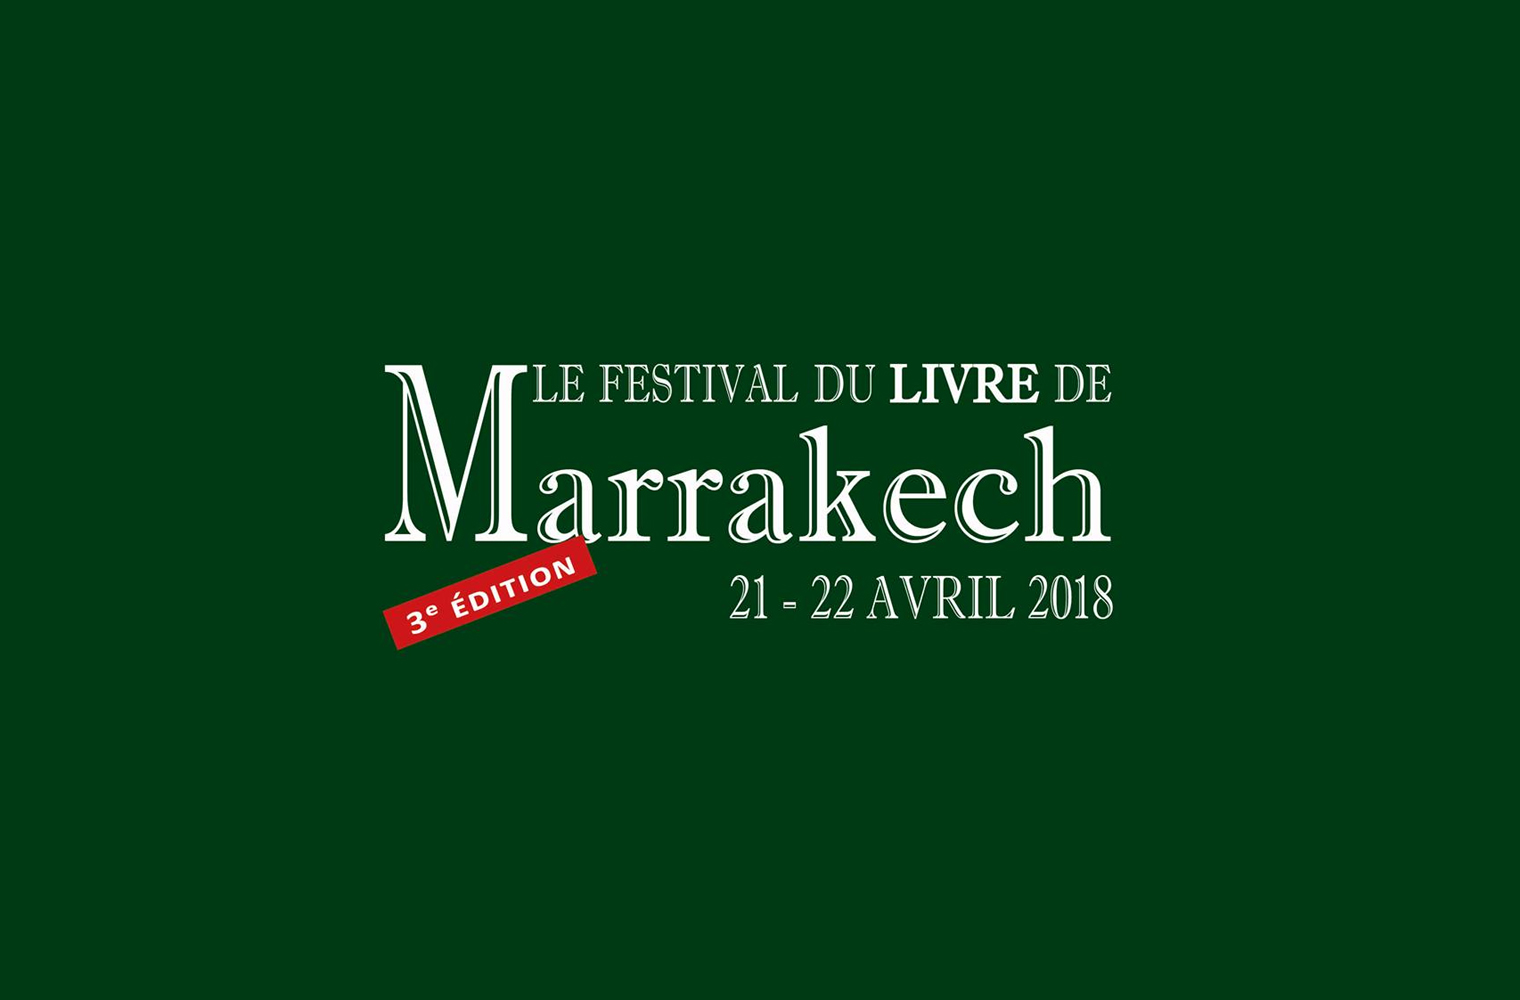 Le Festival du Livre de Marrakech